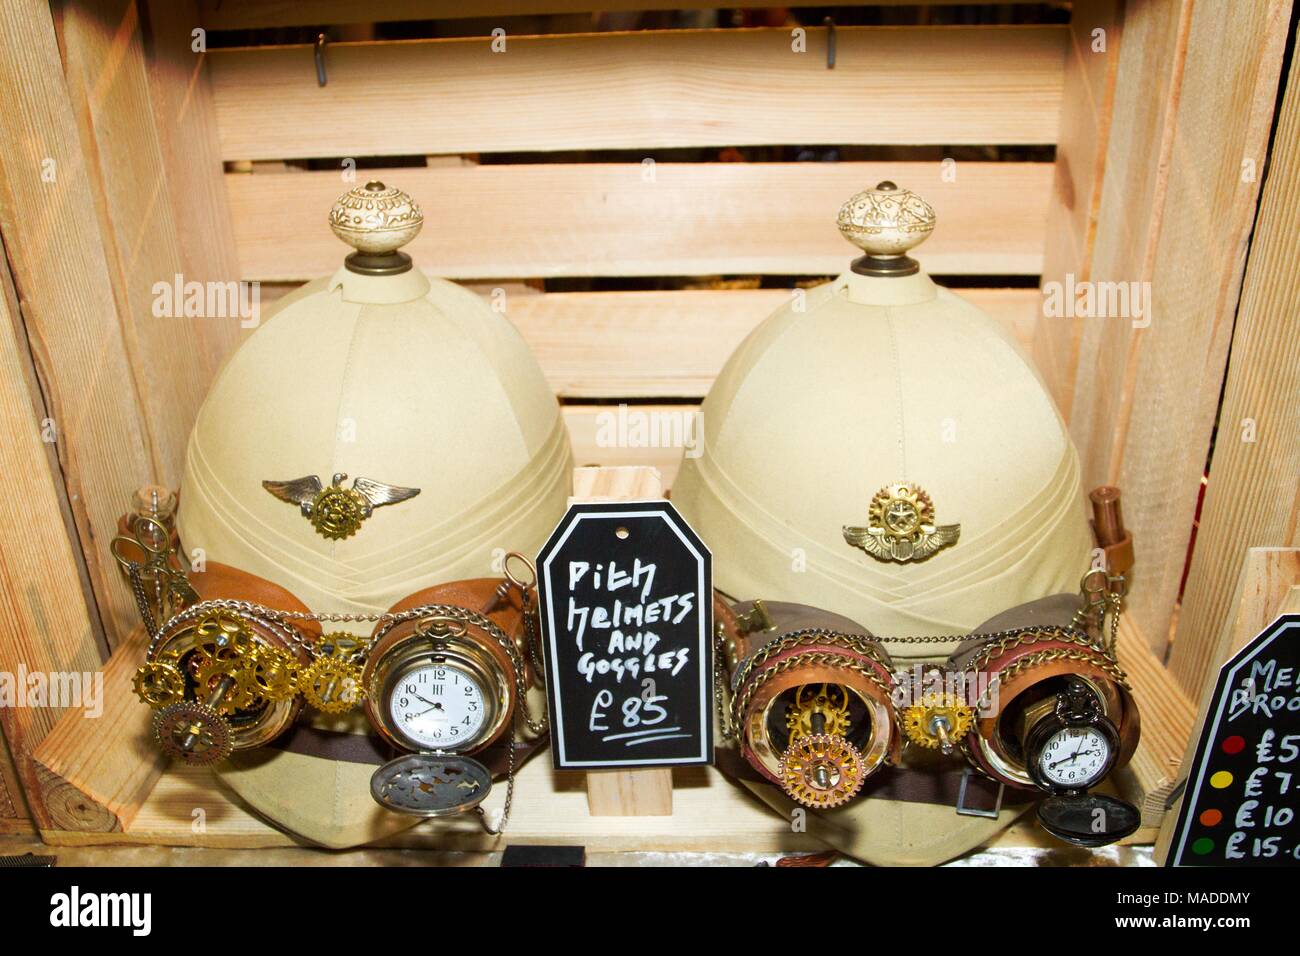 Lunettes casquettes Casques casque colonial spyglas lunettes spy glass collection hat chapeaux watch horloge mode africaine Afrique cuir steampunk goth watch Banque D'Images